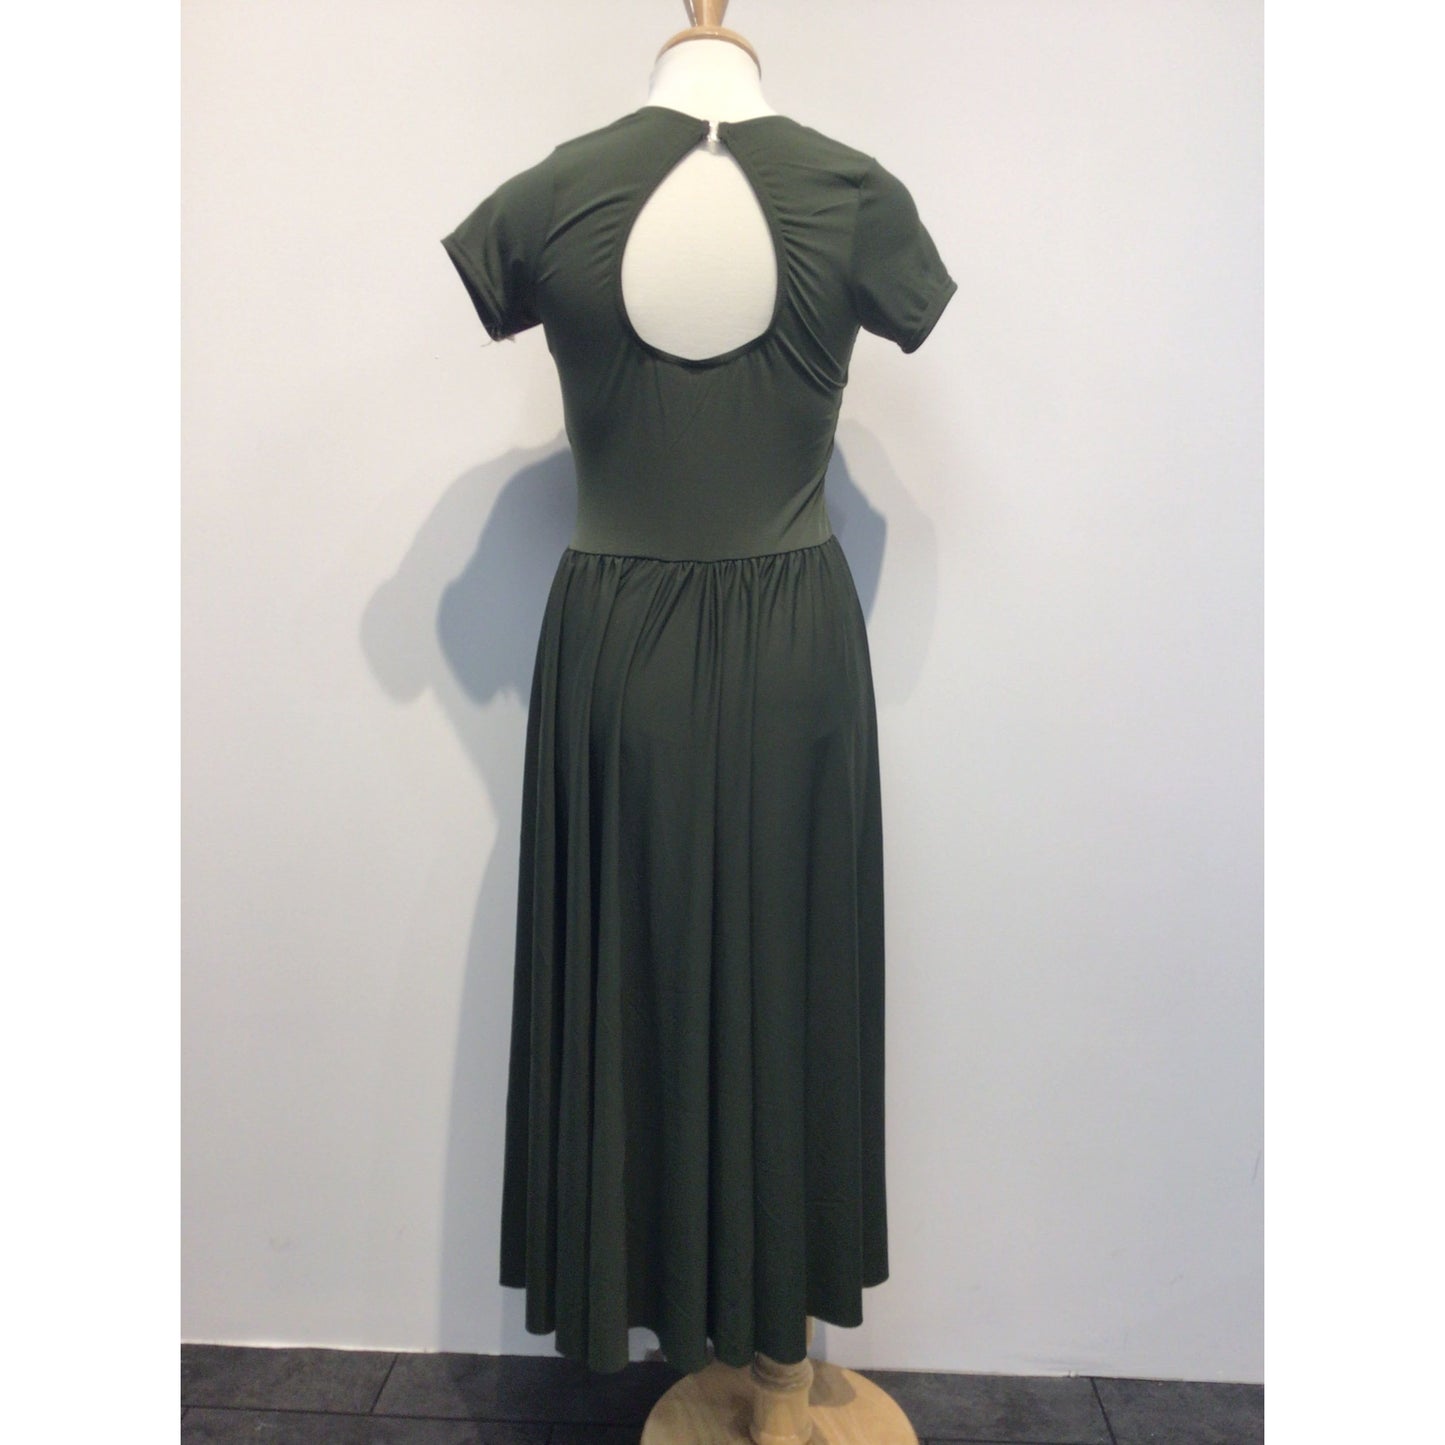 Olive Full Length Lyrical Dress